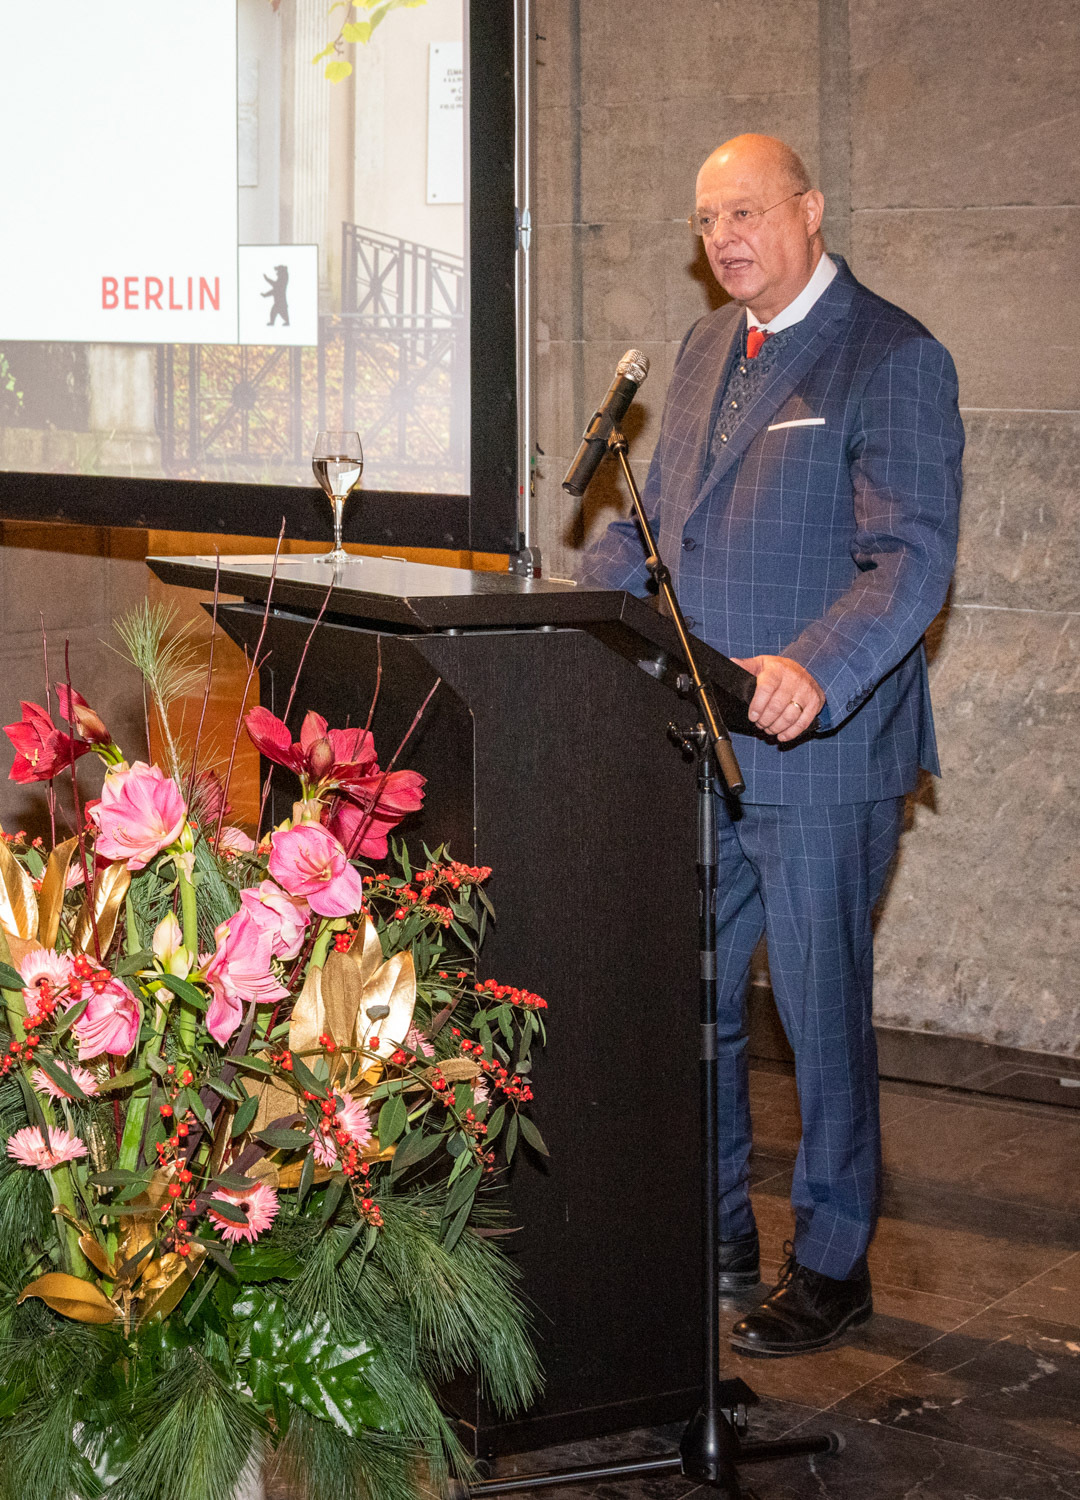 Laudatio von Dr. Jörg Kuhn auf EFEU e.V. anlässlich der Verleihung der Ferdinand-von-Quast-Medaille am 30. November 2022